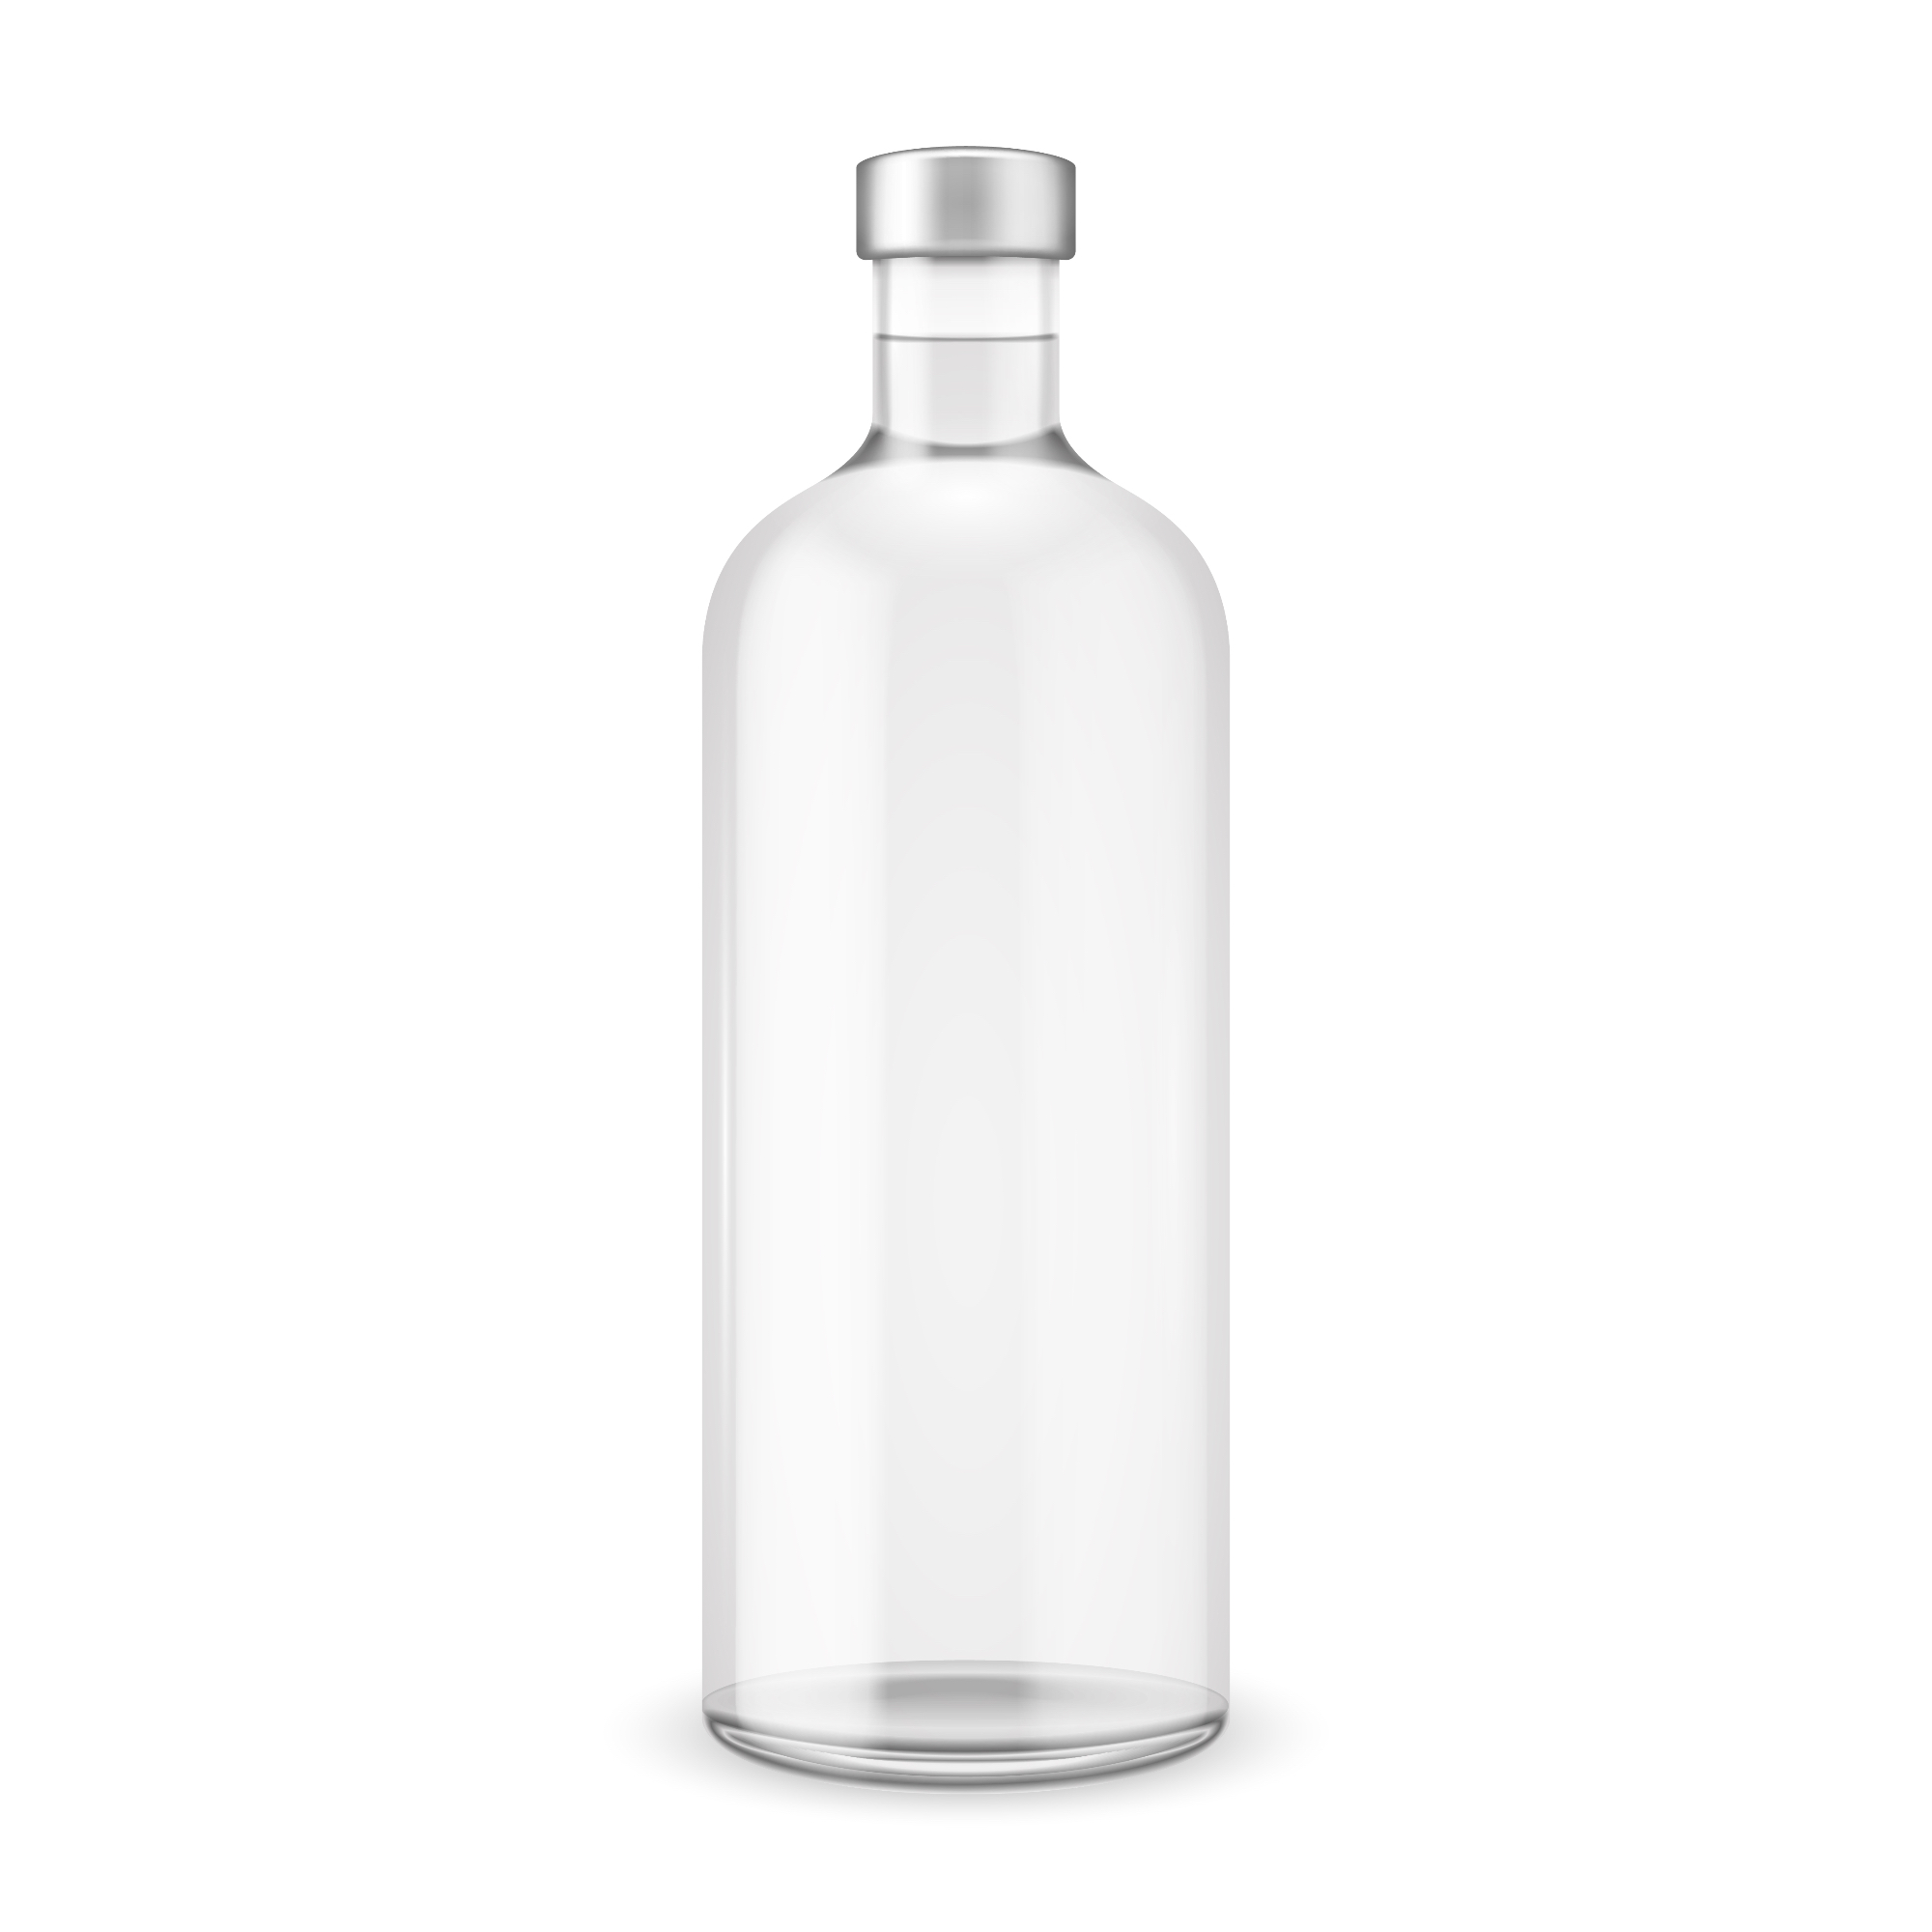 Steklenica za vodo je osnovni predmet, ki ga nosimo vsak dan